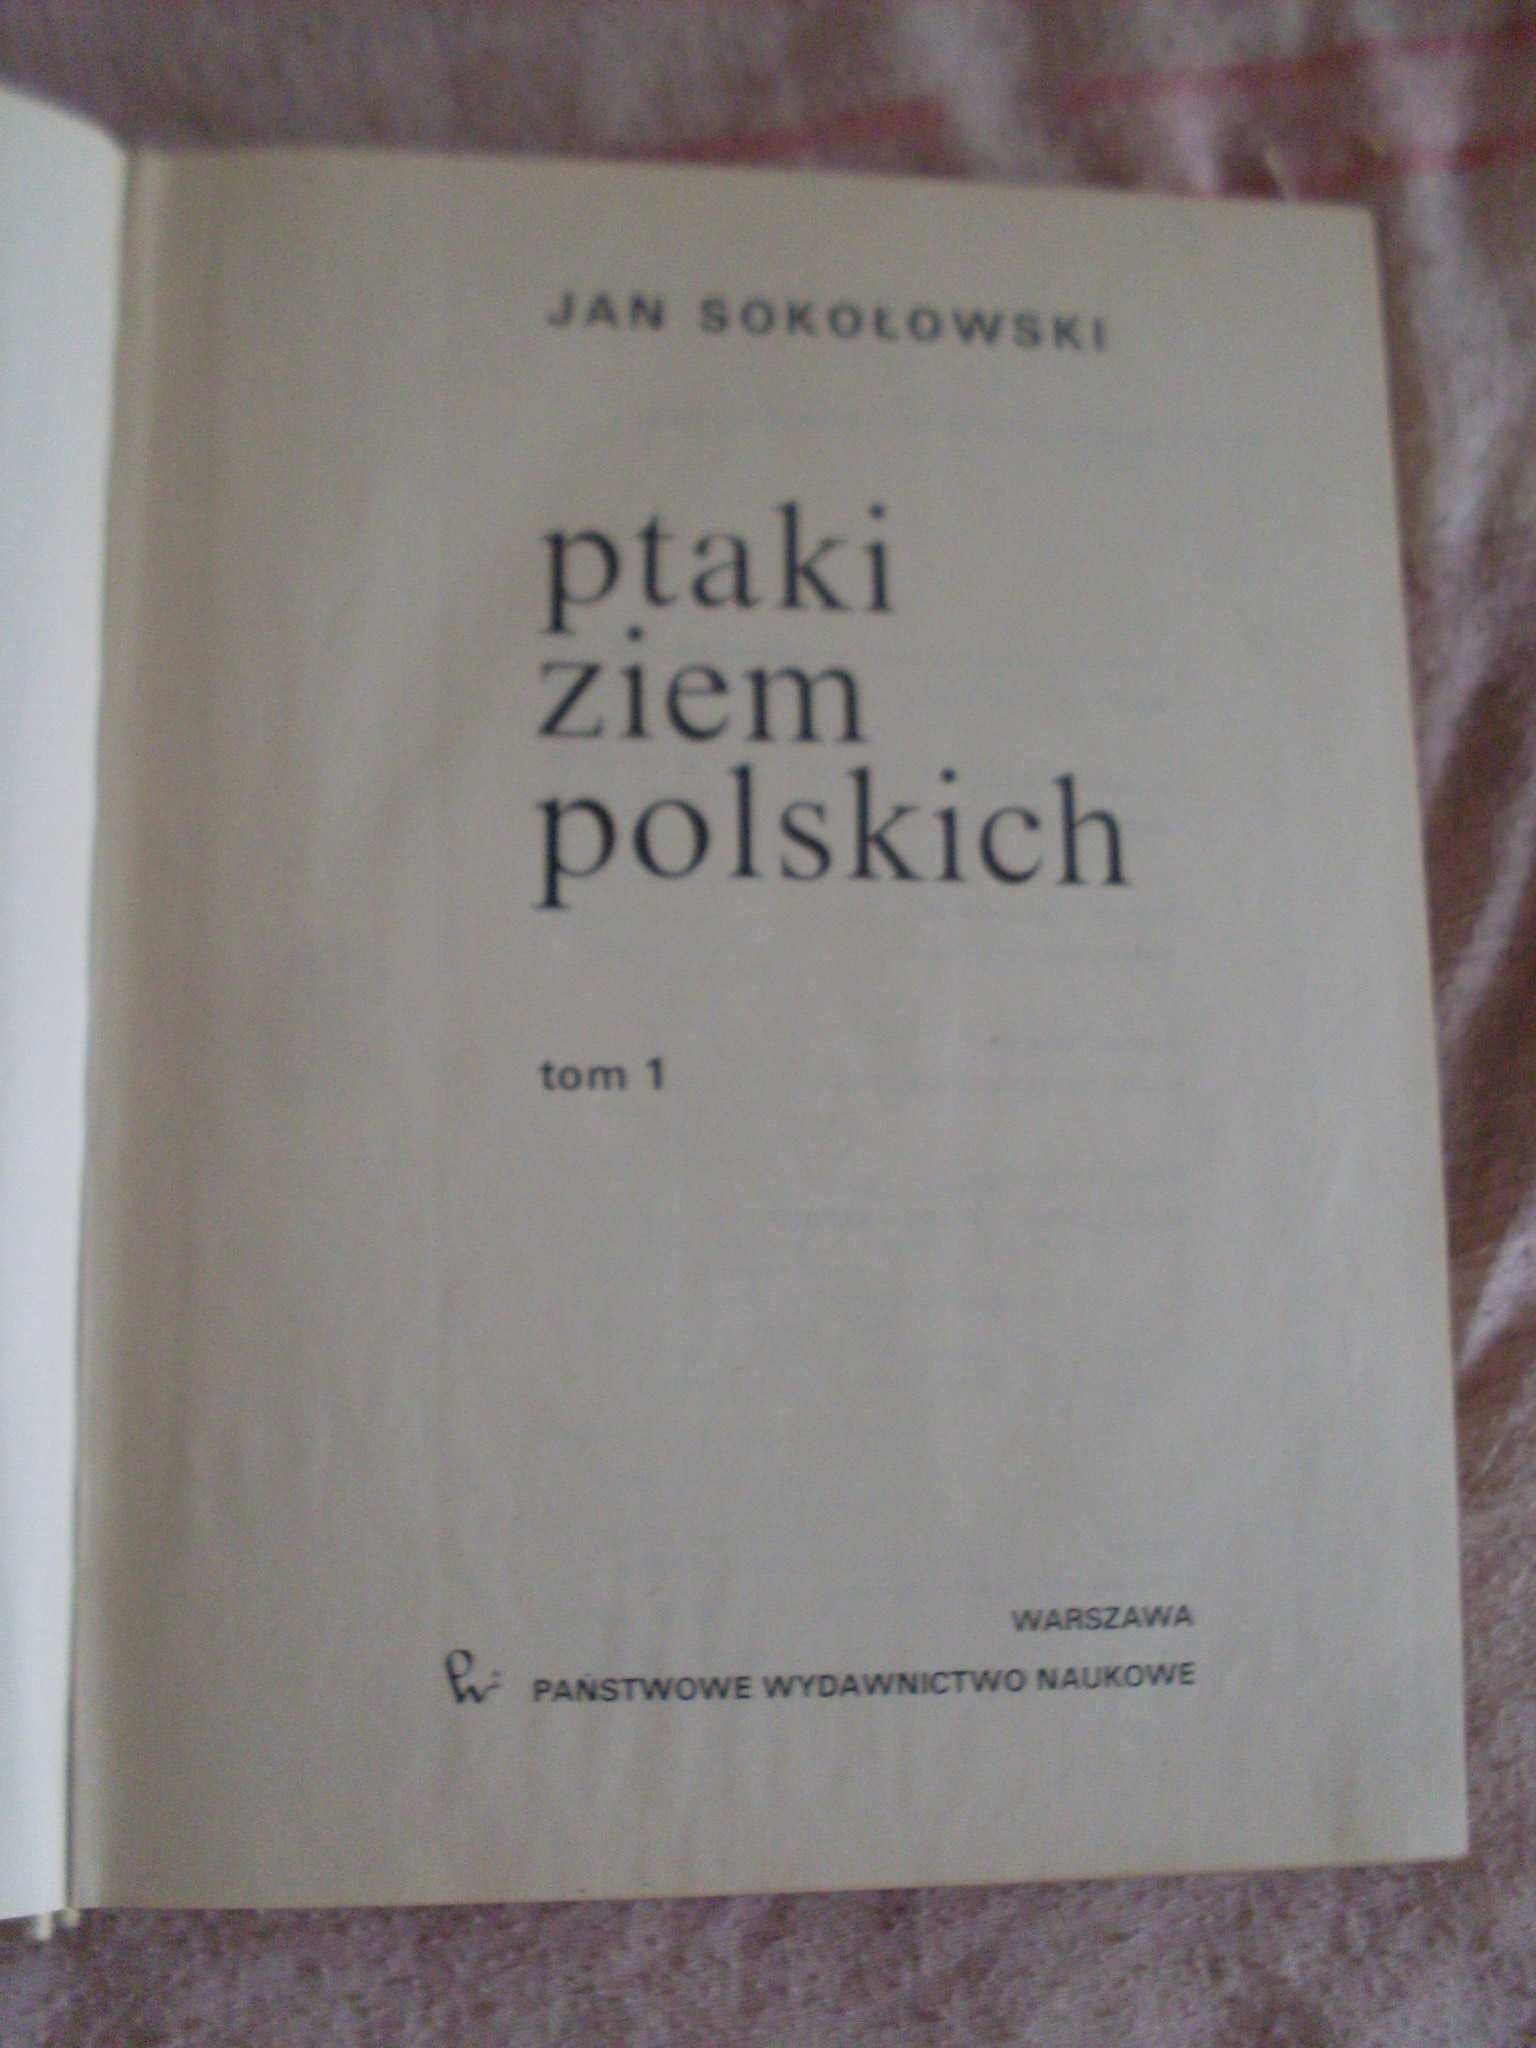 Sokołowski Ptaki ziem polskich tom 1